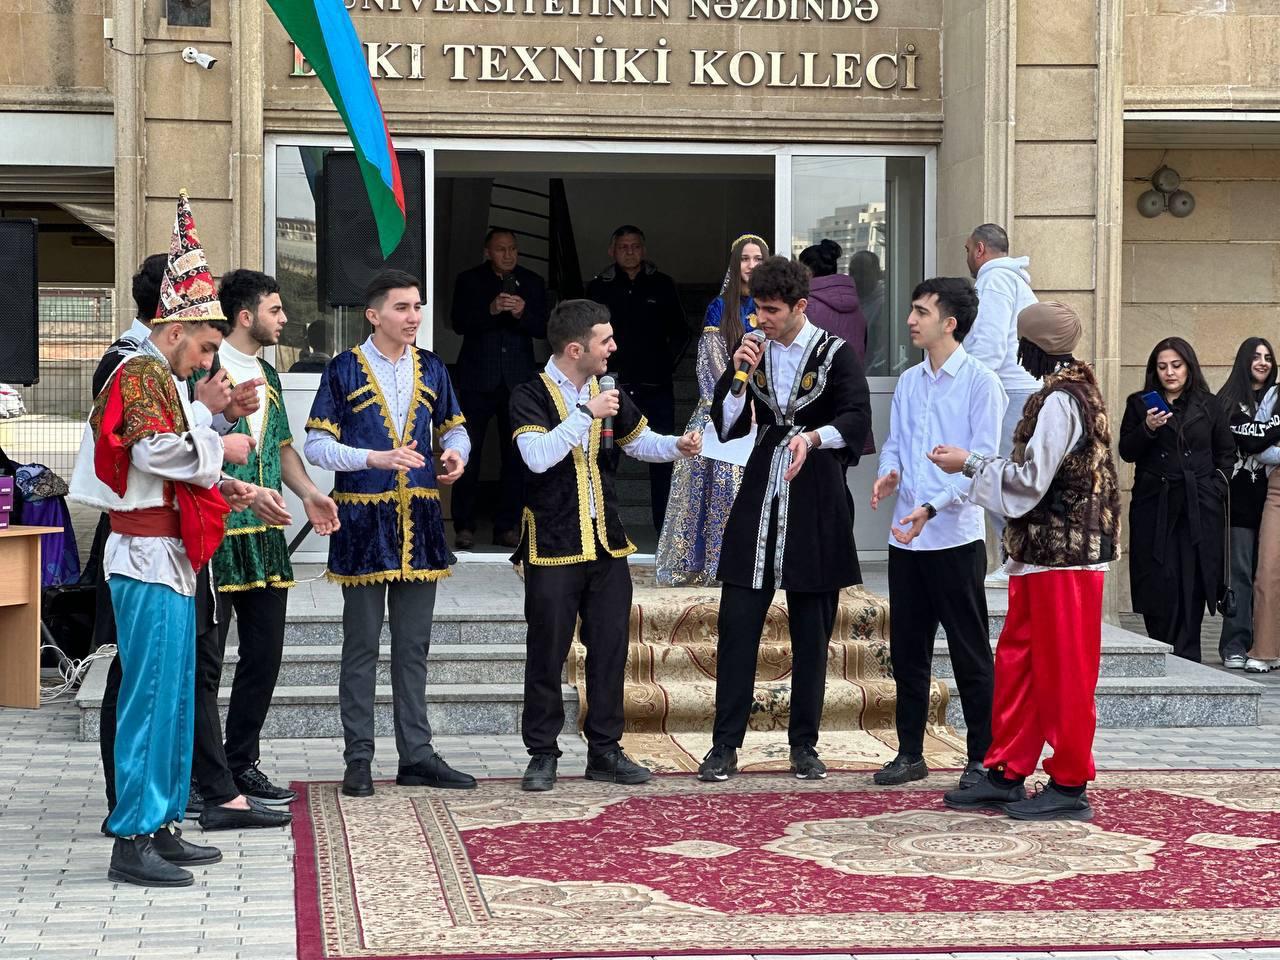 Bakı Texniki Kollecində Novruz bayramı keçirildi.